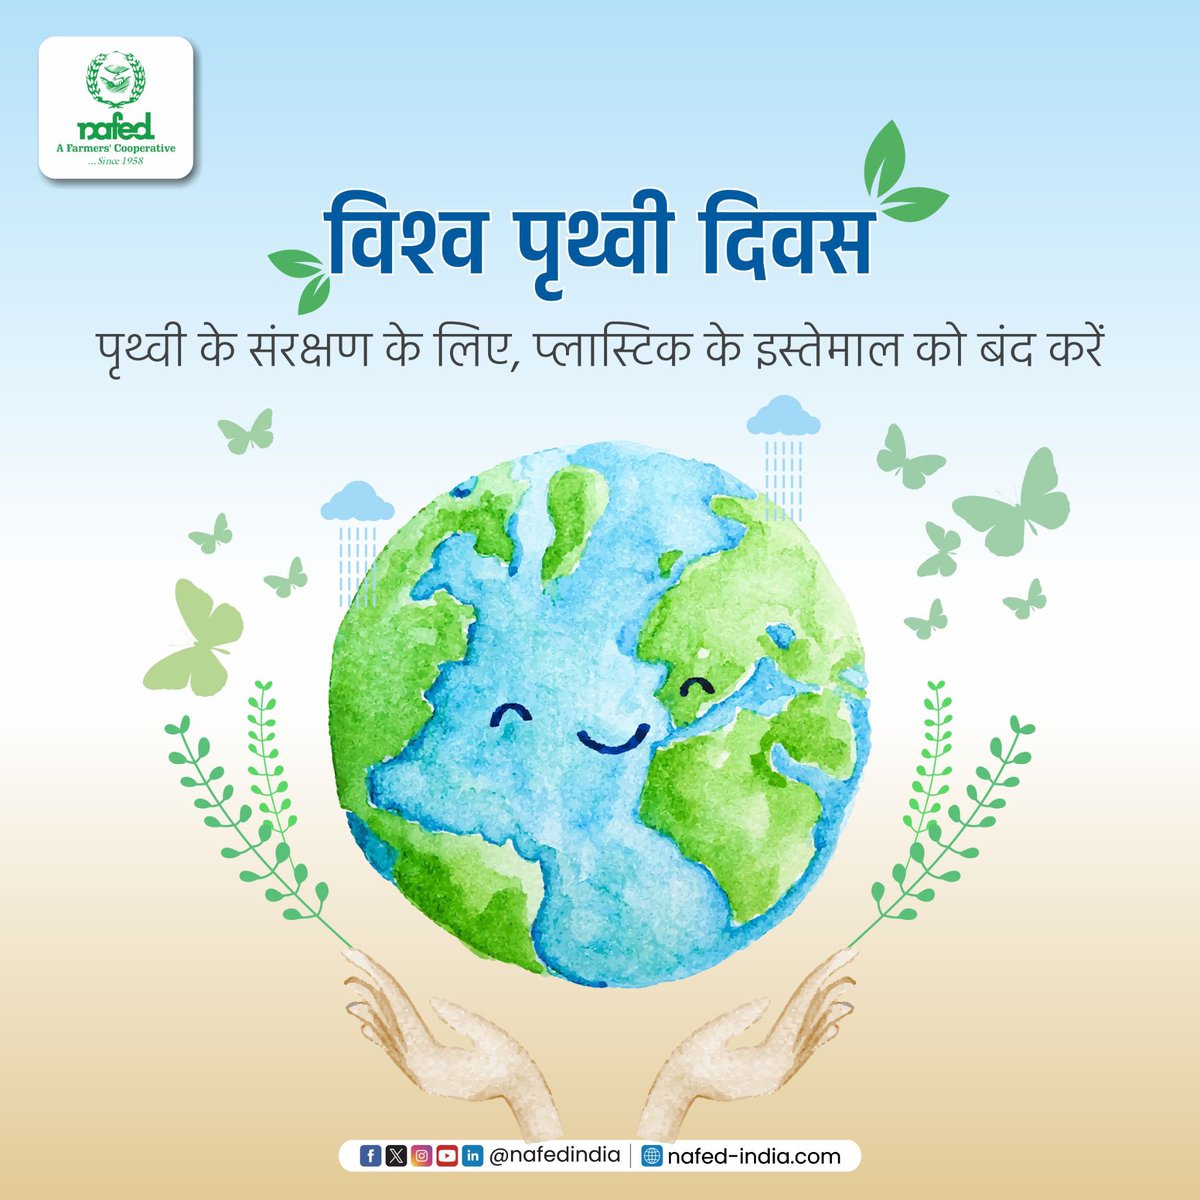 पृथ्वी के बिना जीवन संभव नहीं है। पृथ्वी पर प्लास्टिक, प्रदूषण एवं दूषित वस्तुओं को कम करने में मदद करें। आपका यह प्रयास पृथ्वी को स्वच्छ एवं सुंदर रखने में मदद करेगा। नेफेड परिवार की ओर से विश्व पृथ्वी दिवस की बधाई।  

#NAFED #NAFEDIndia #EarthDay #SaveThePlanet #SayNoToPlastic